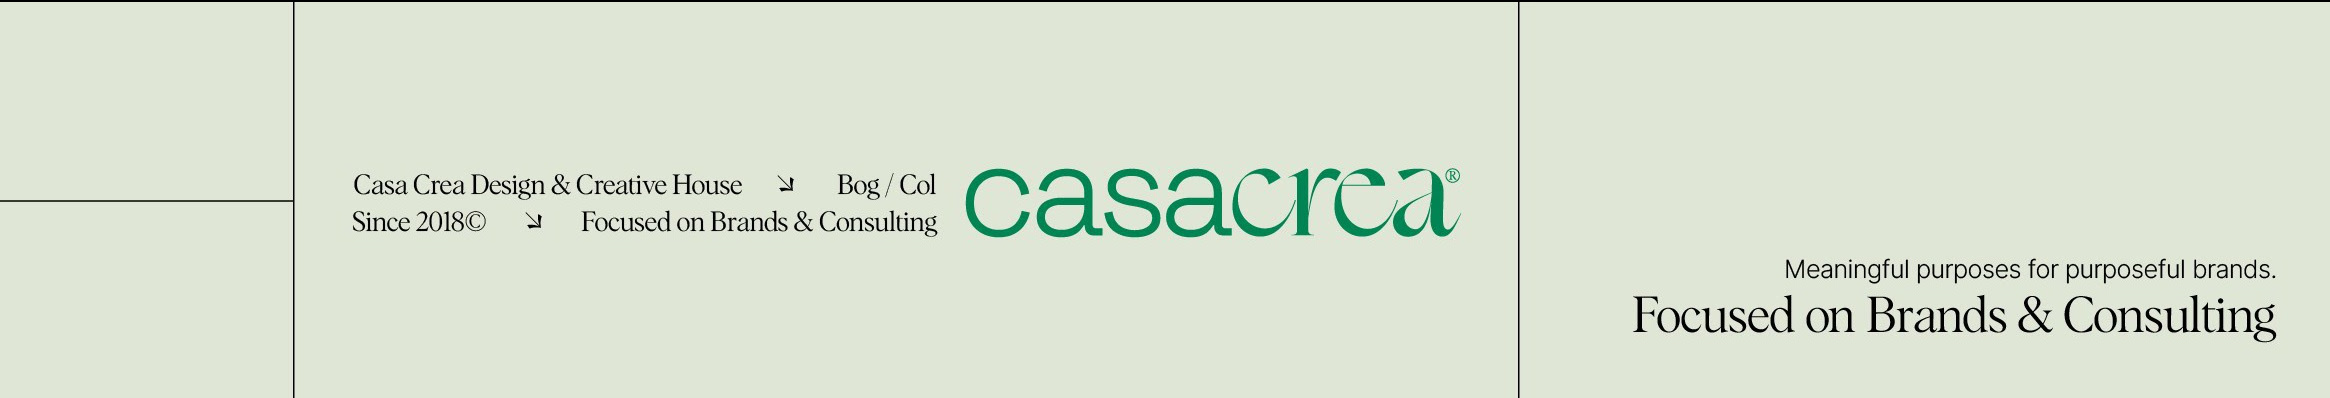 Casa Crea Design's profile banner